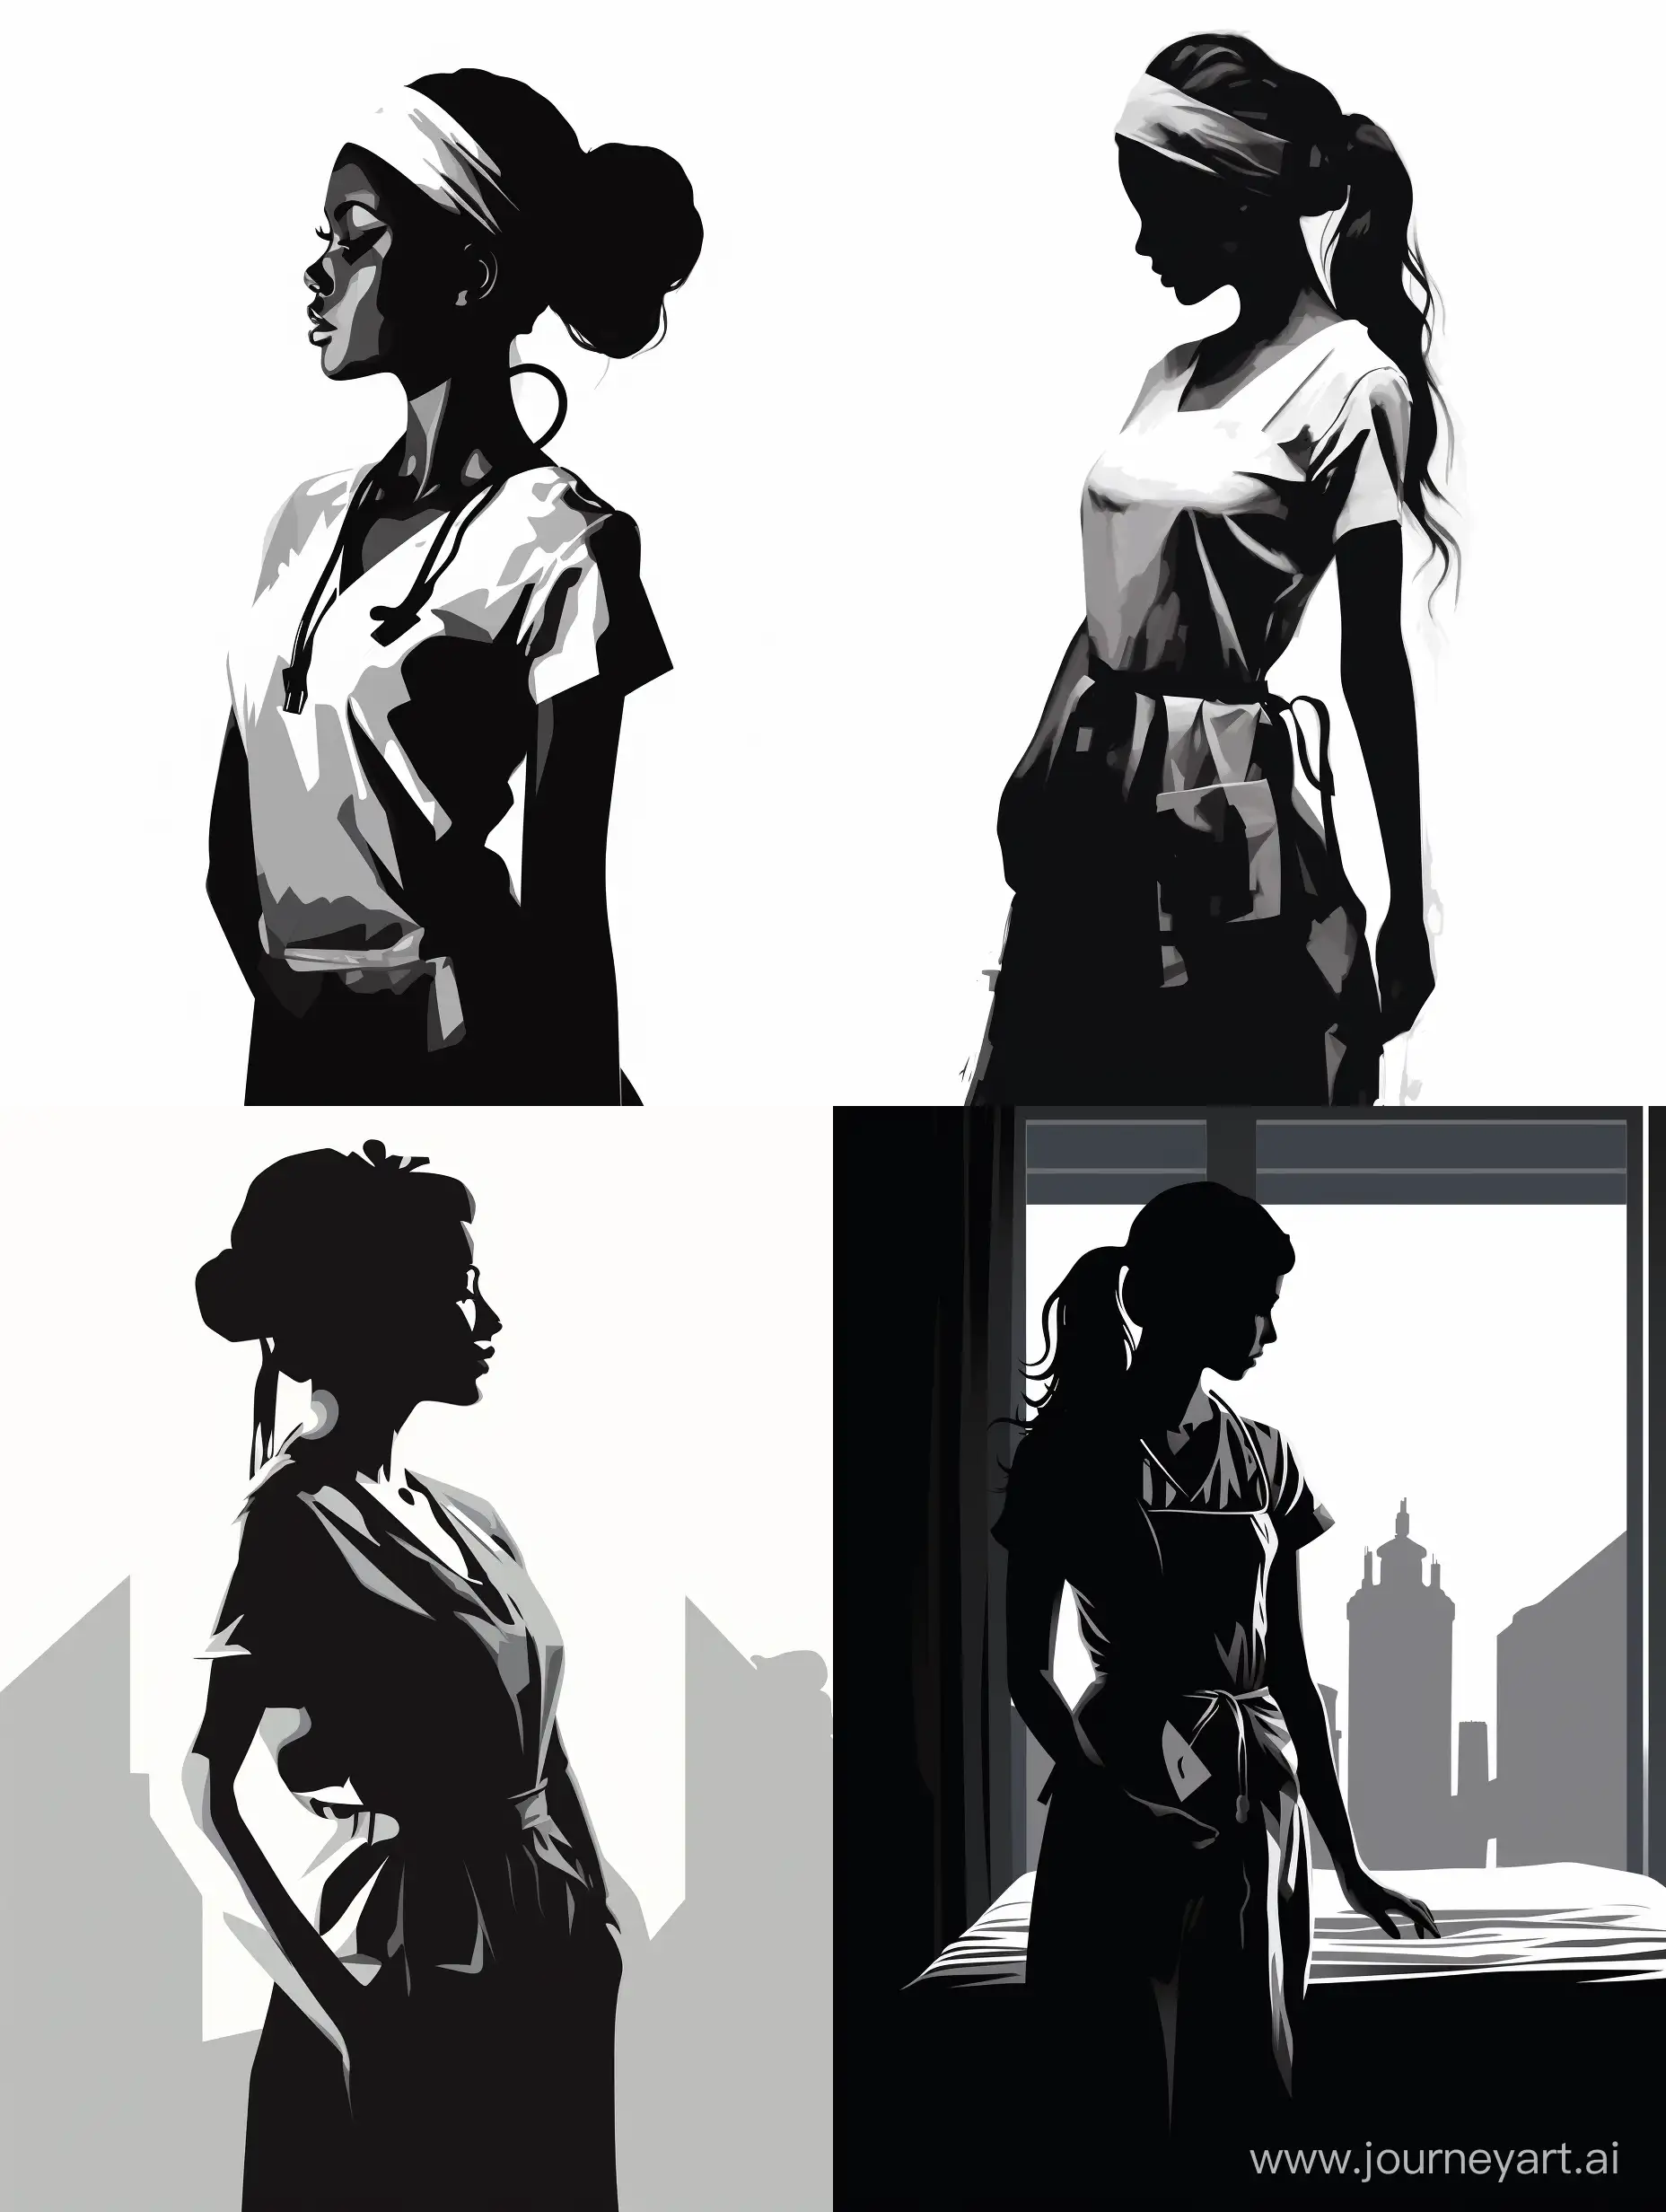 силуэт медицинской сестры в черно-белом стиле, 2D